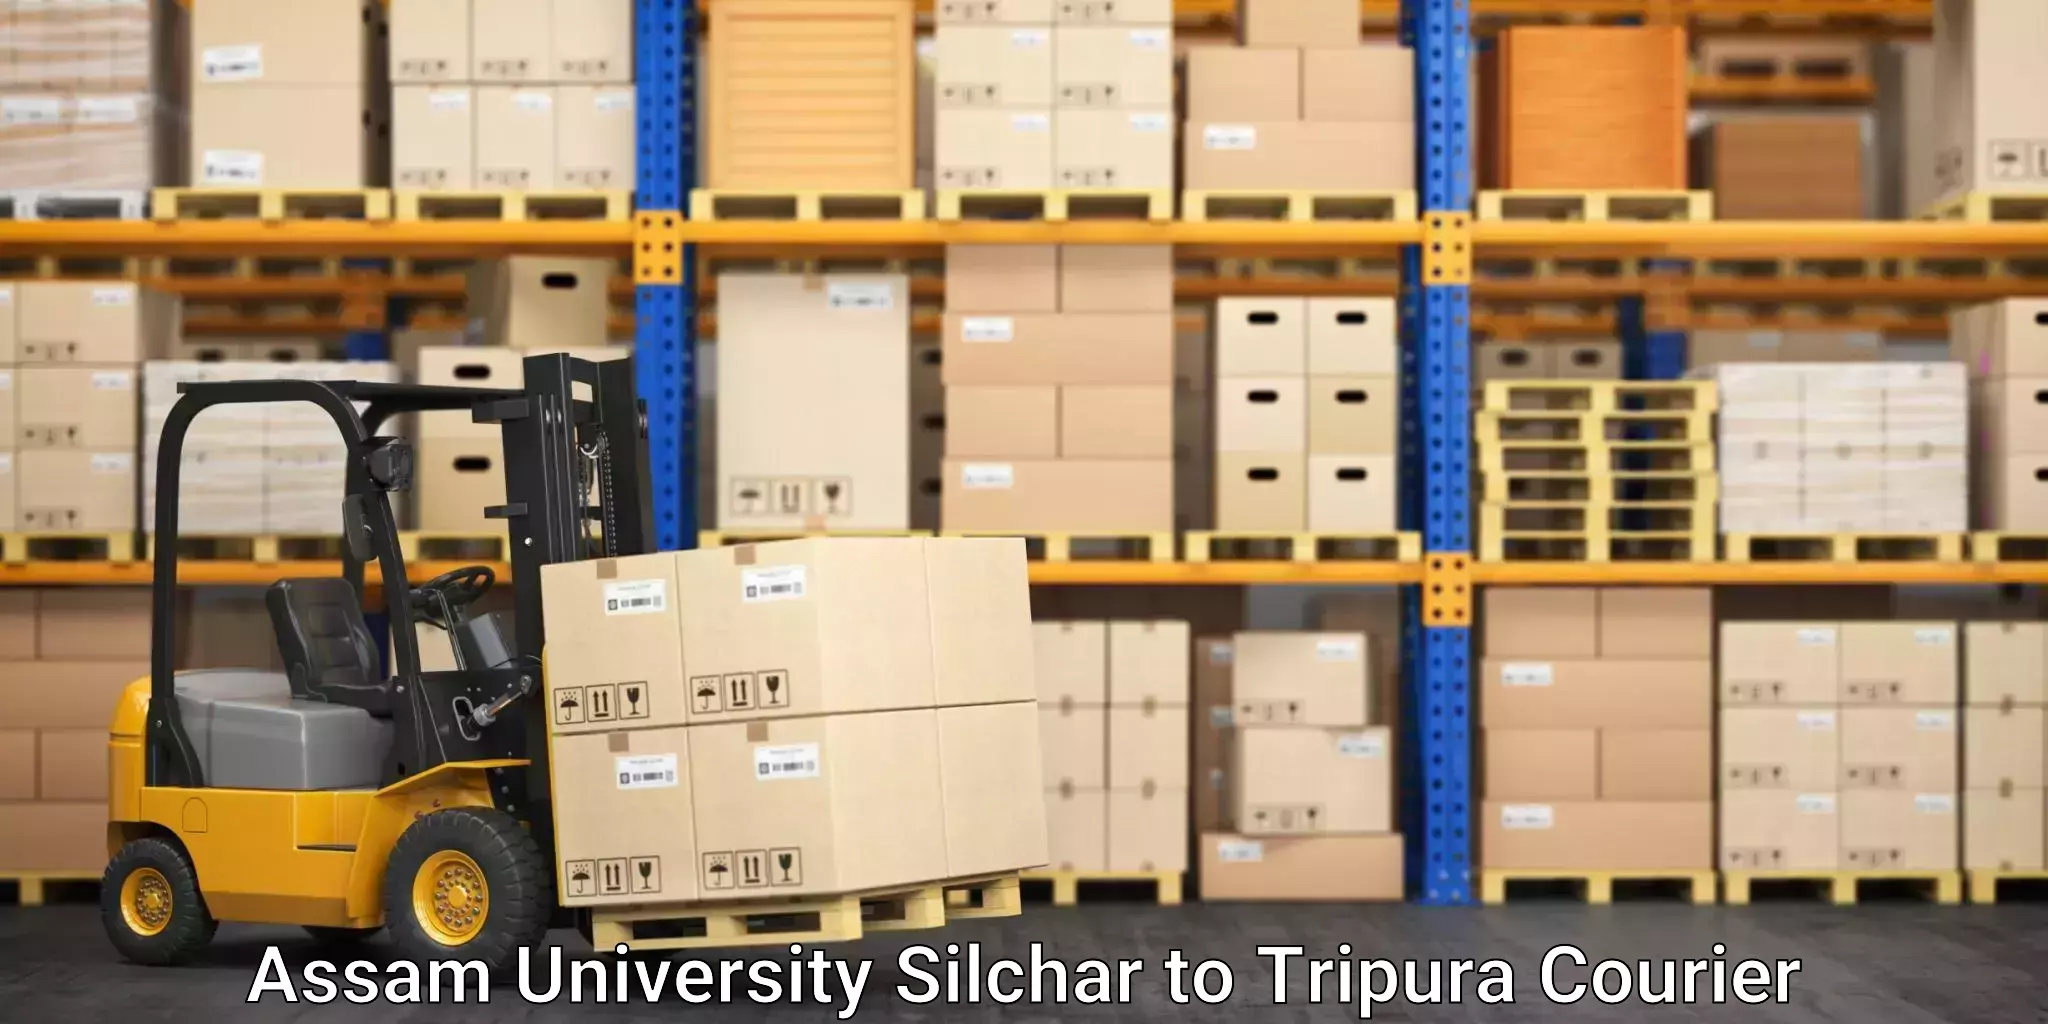 Courier service innovation Assam University Silchar to Khowai